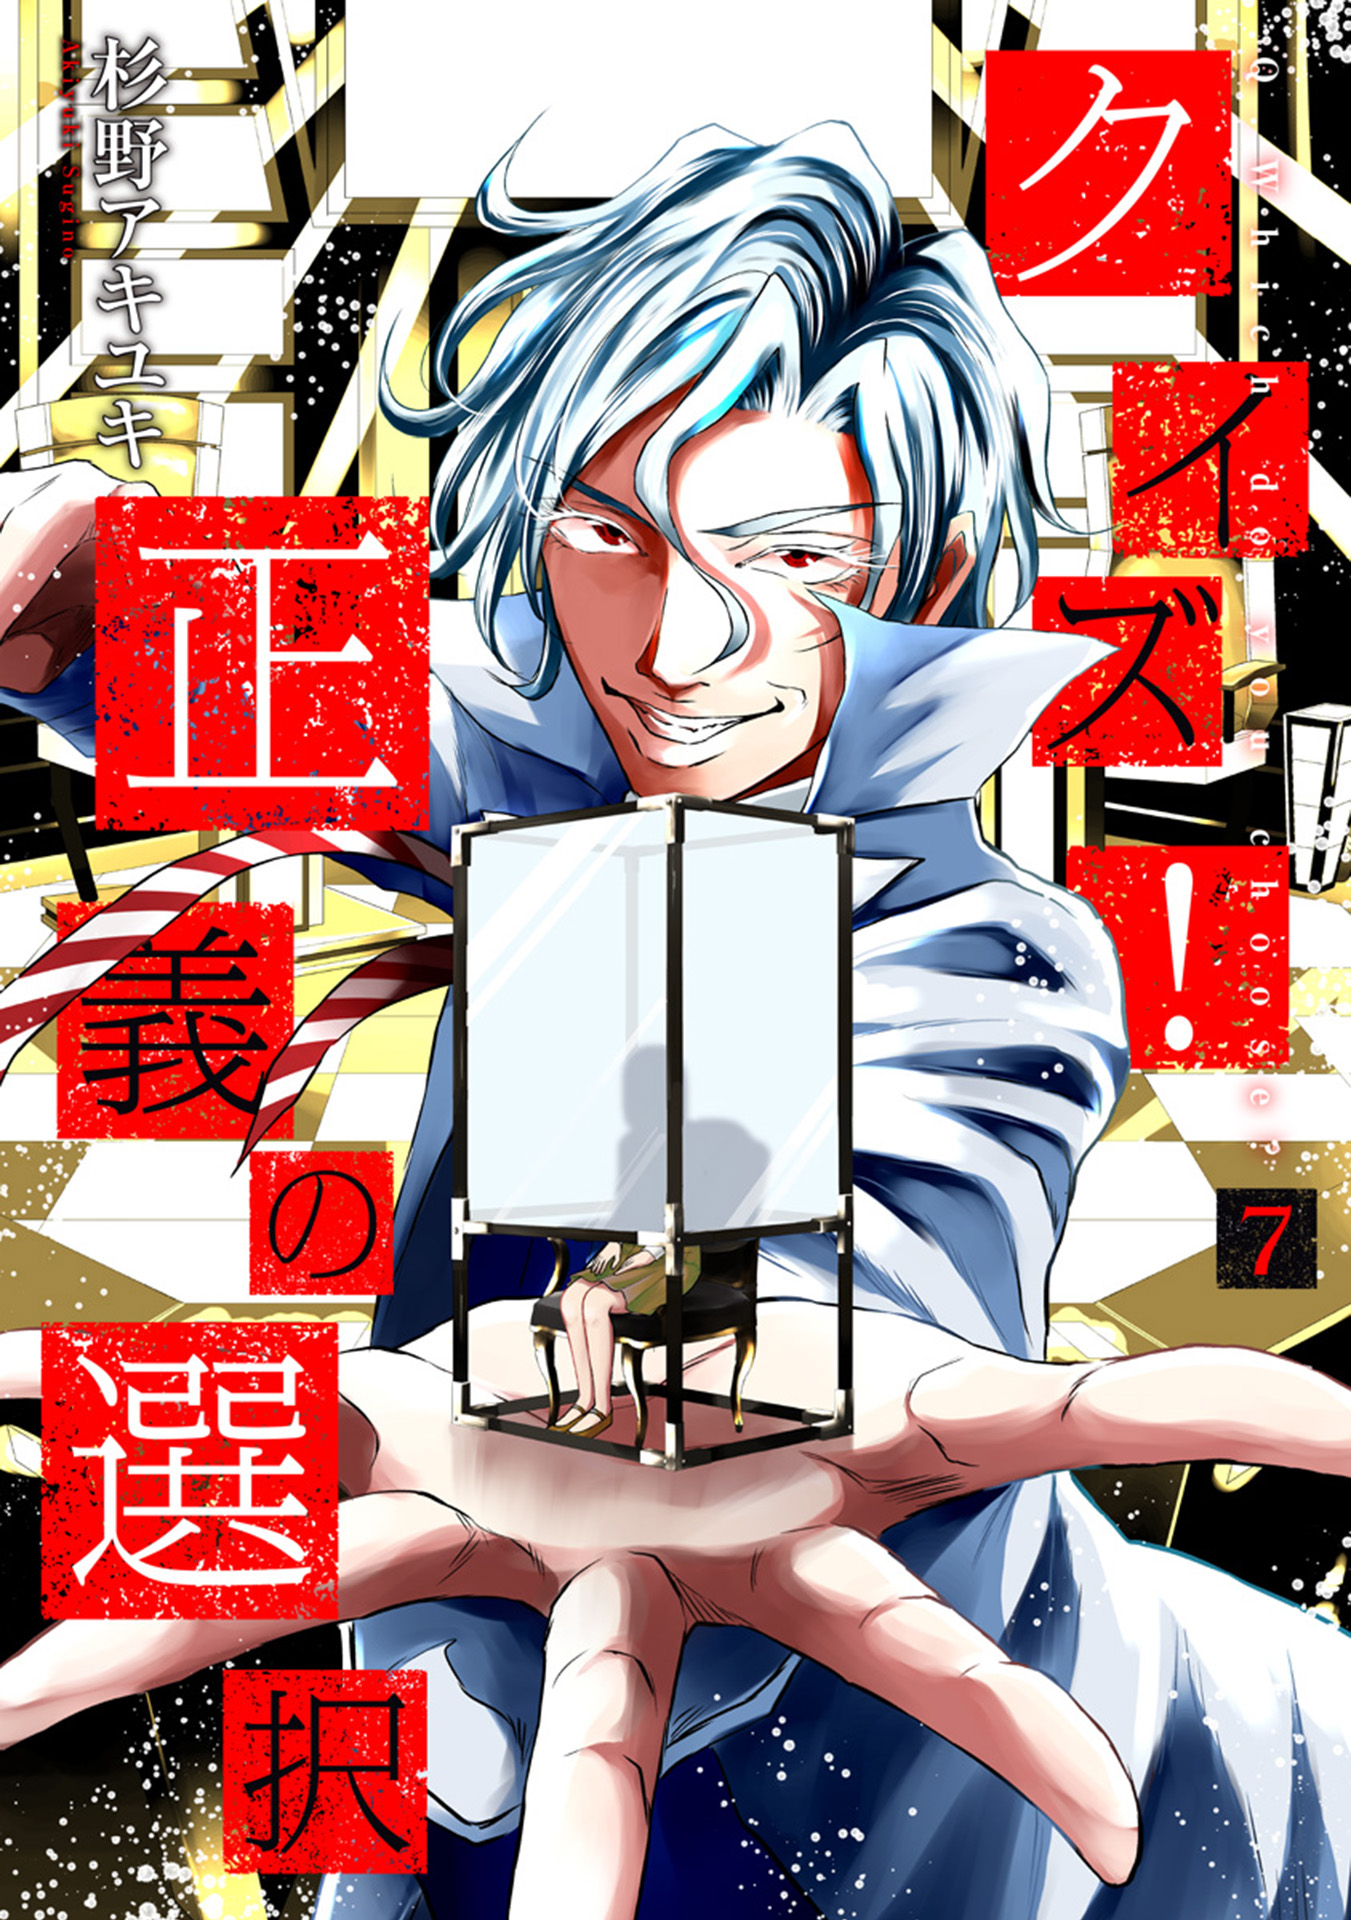 quiz #quiztime #anime #manga